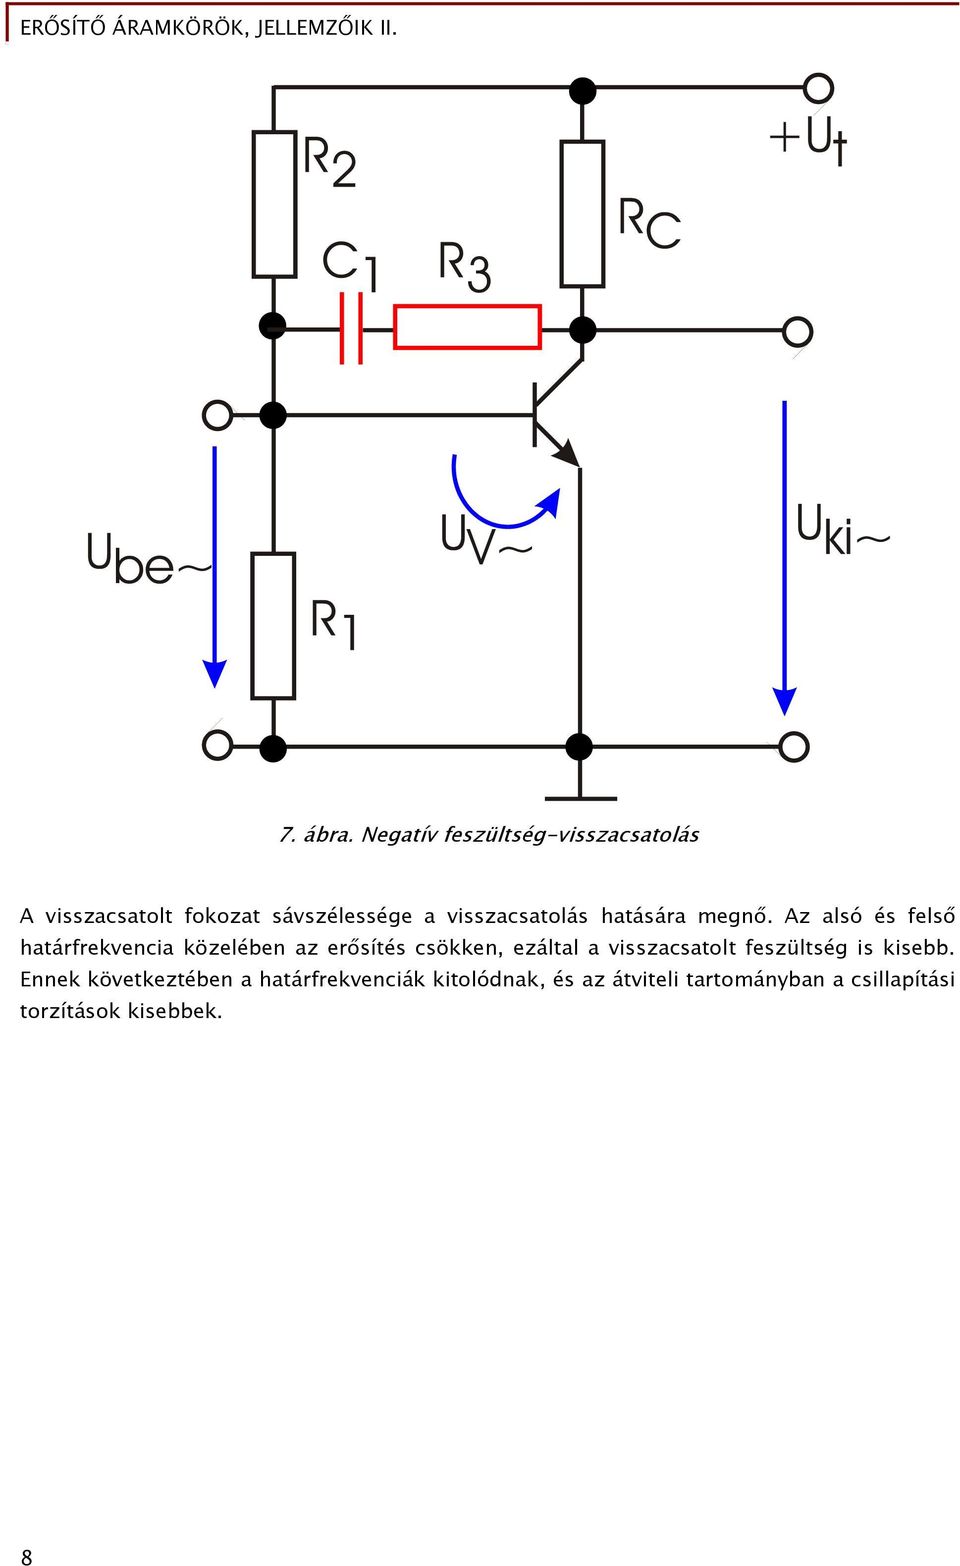 Erősítő áramkörök, jellemzőik II. - PDF Free Download